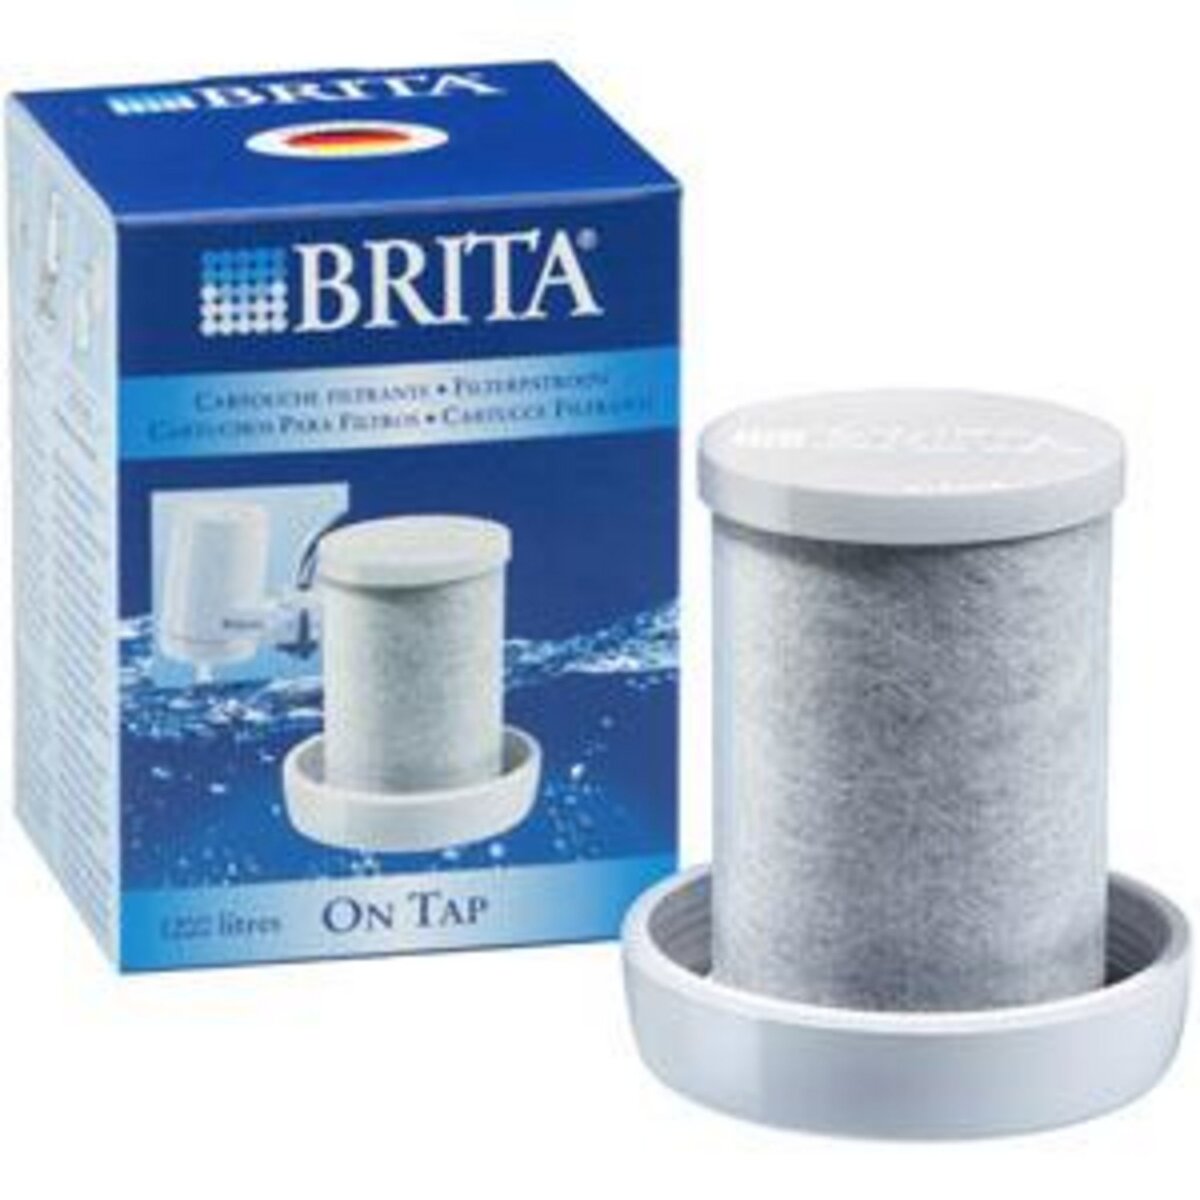 Brita Cartouche pour filtre sur robinet 1200l - 2293 on tap pas